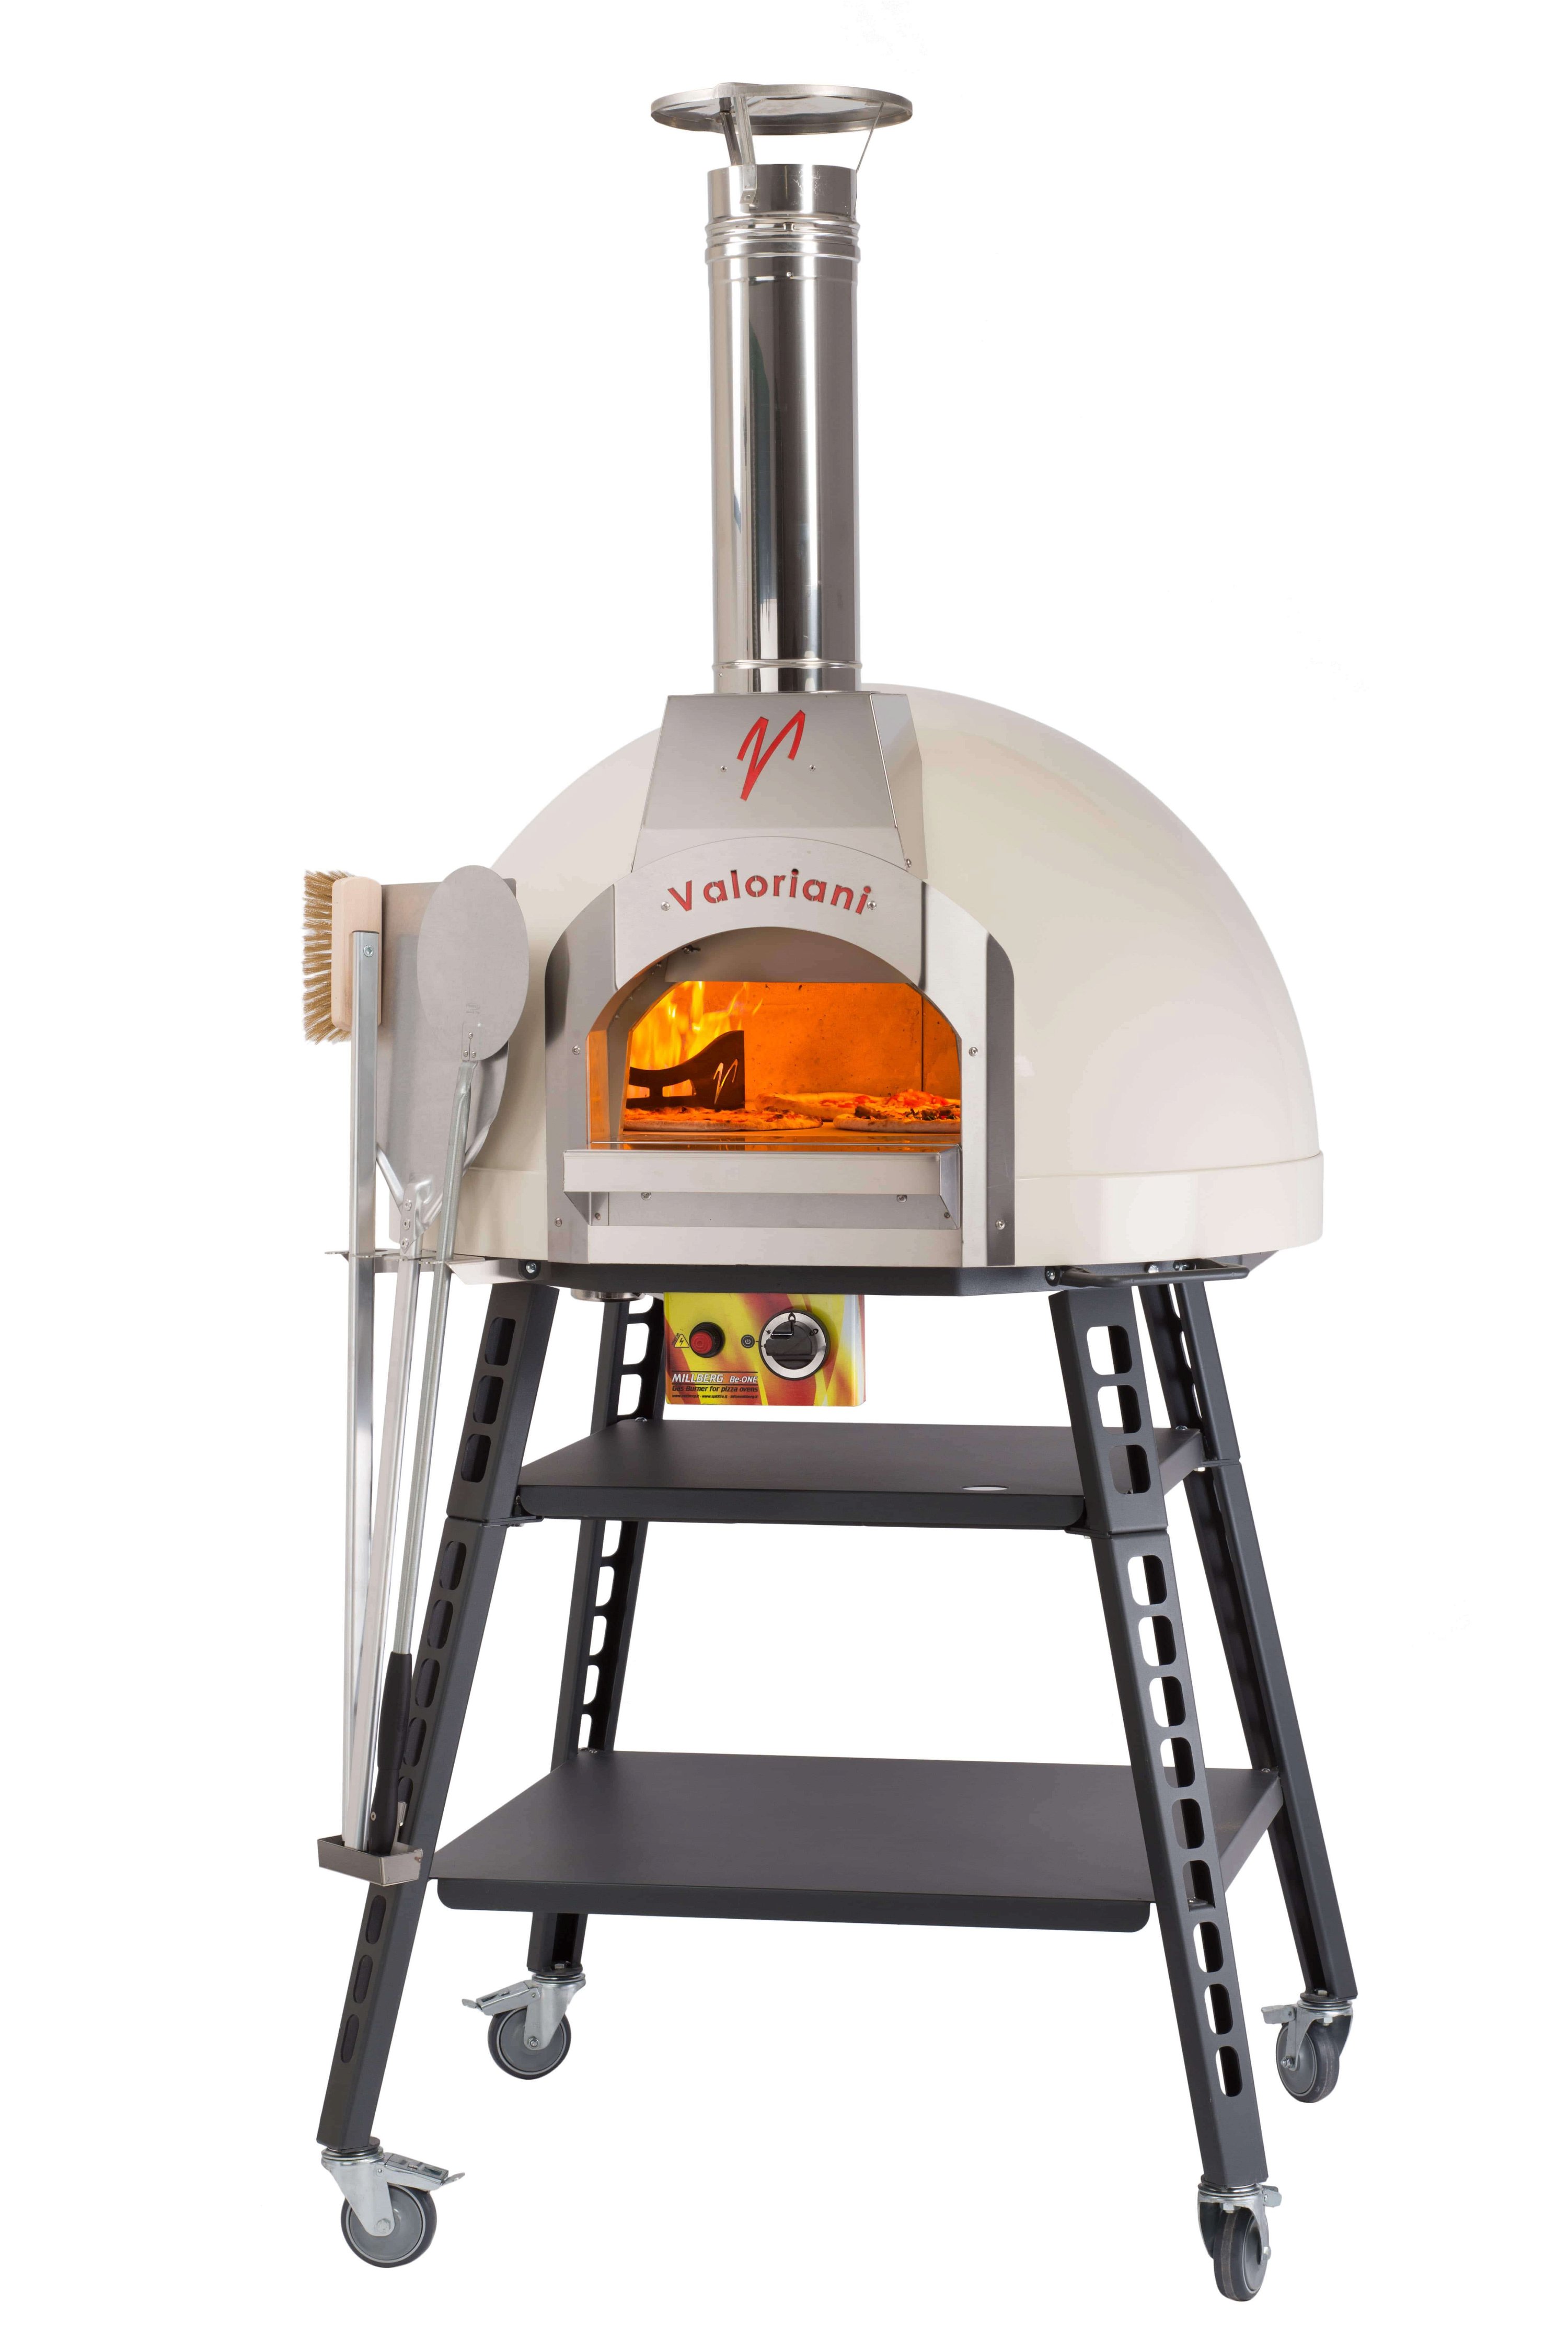 Valoriani Baby: Pizzaofen mit 75cm Durchmesser, inkl. manuellem Gasbrenner und kompletter Basis, weiß